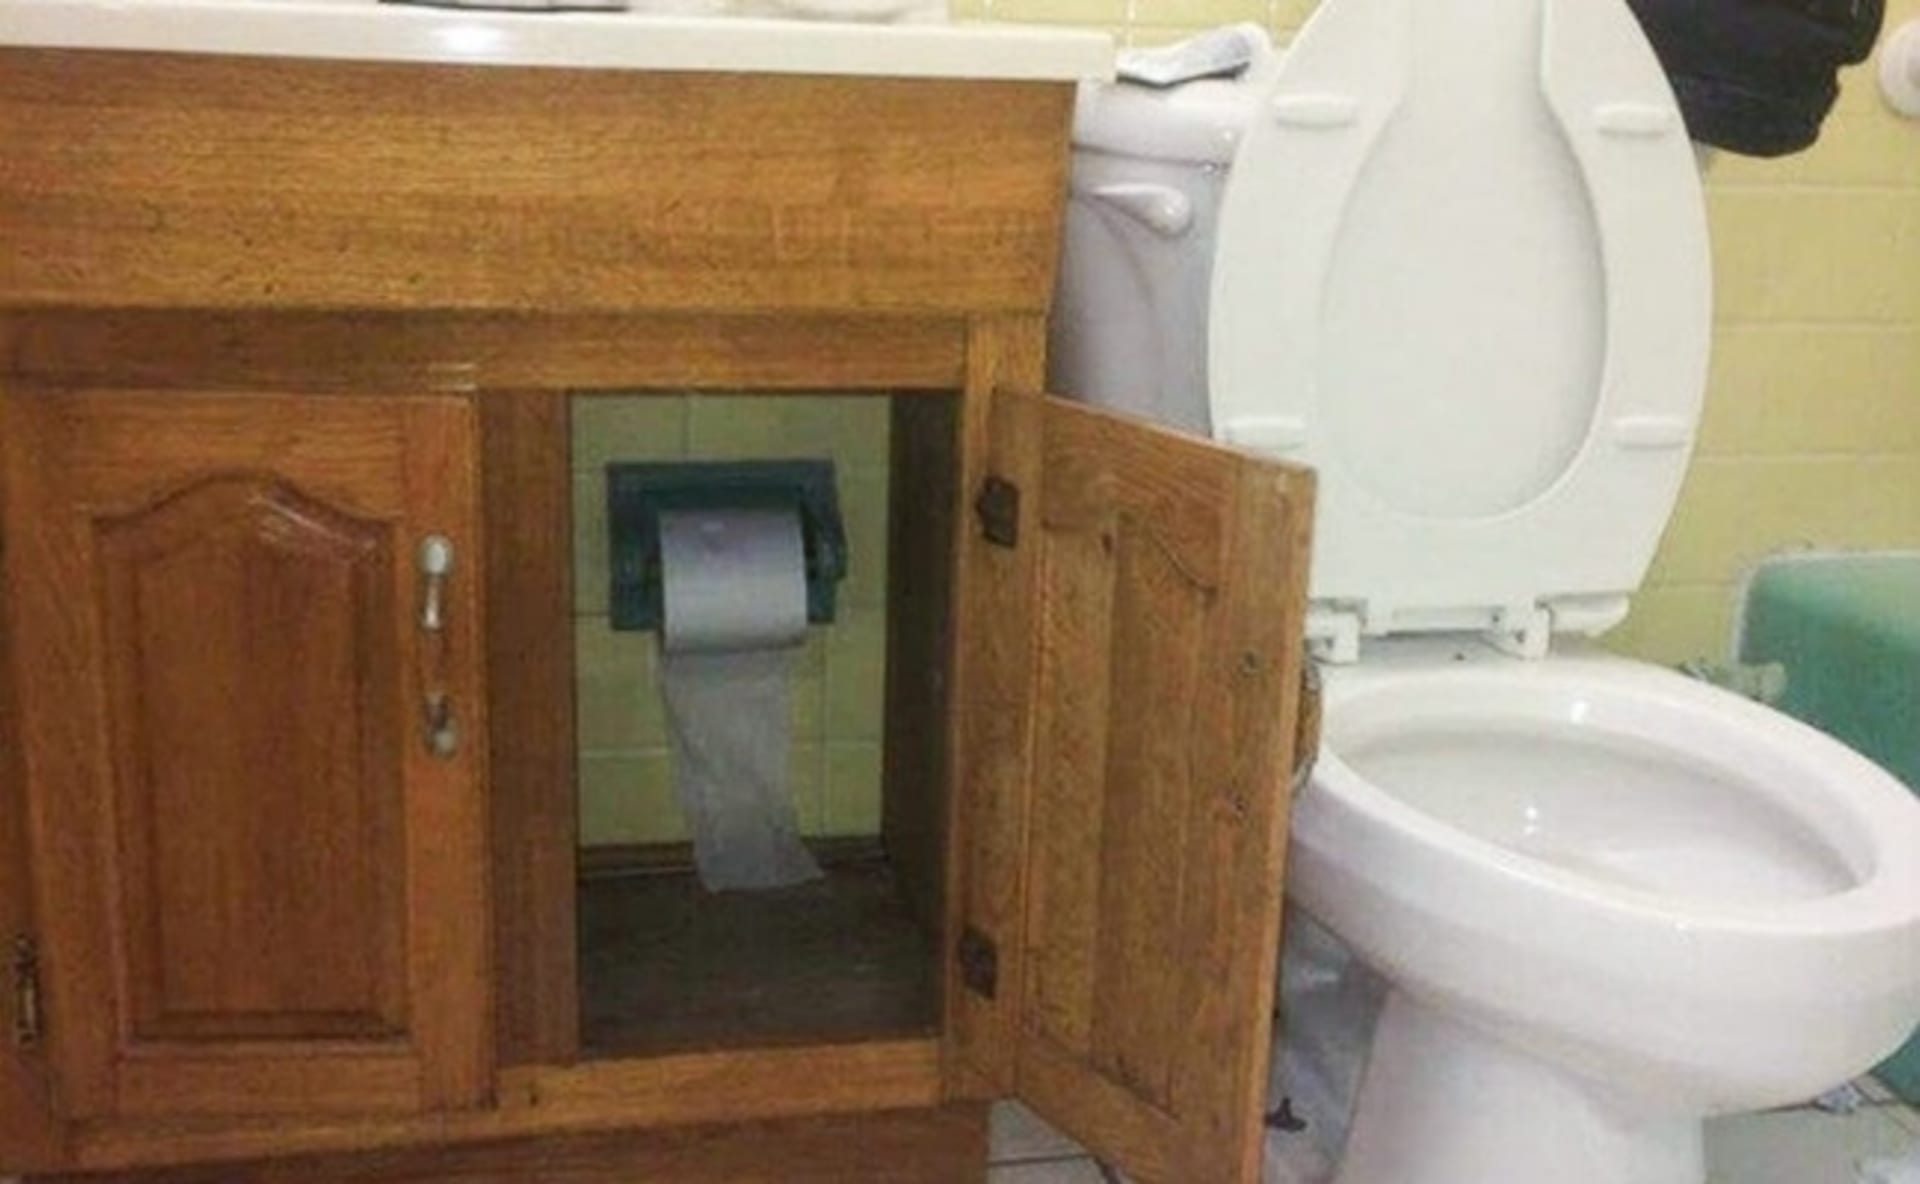 Asi nejbizarnější místo pro toaletní papír.